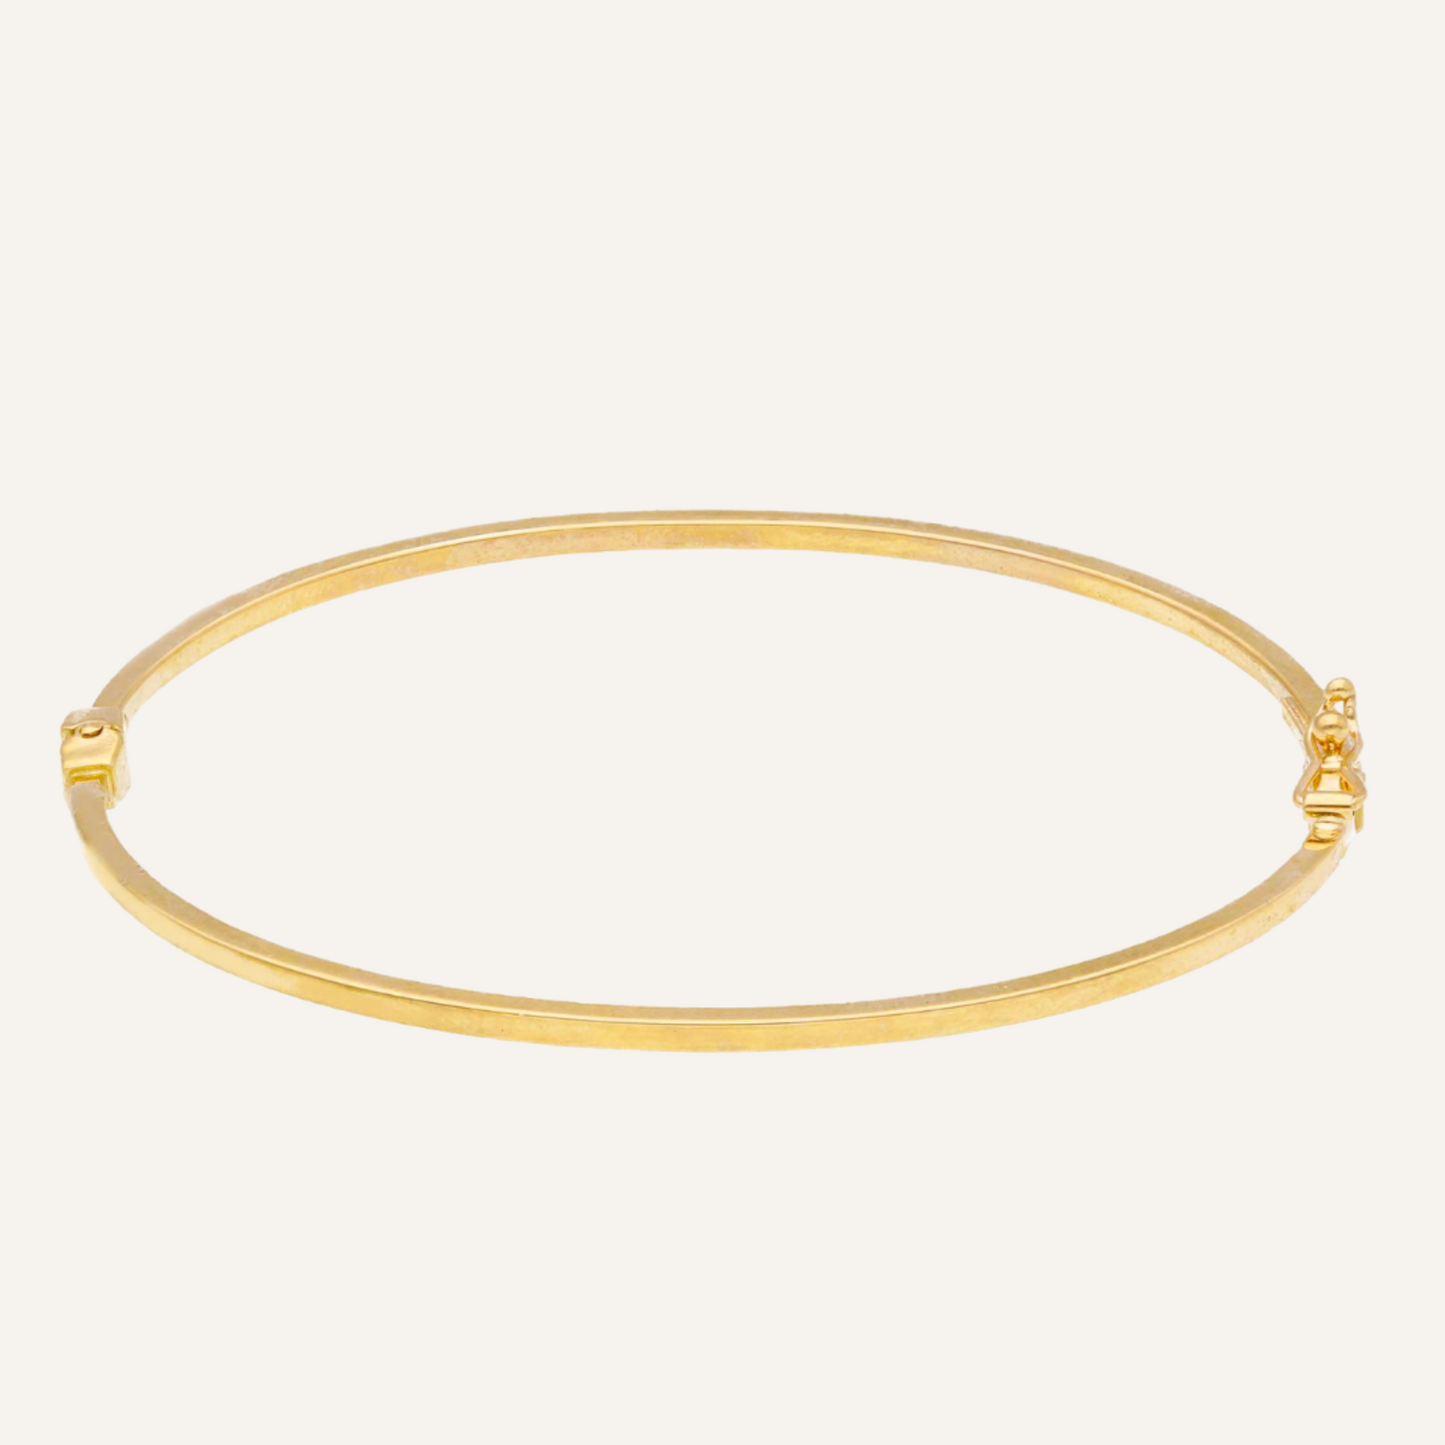 Esclave golden bracelet